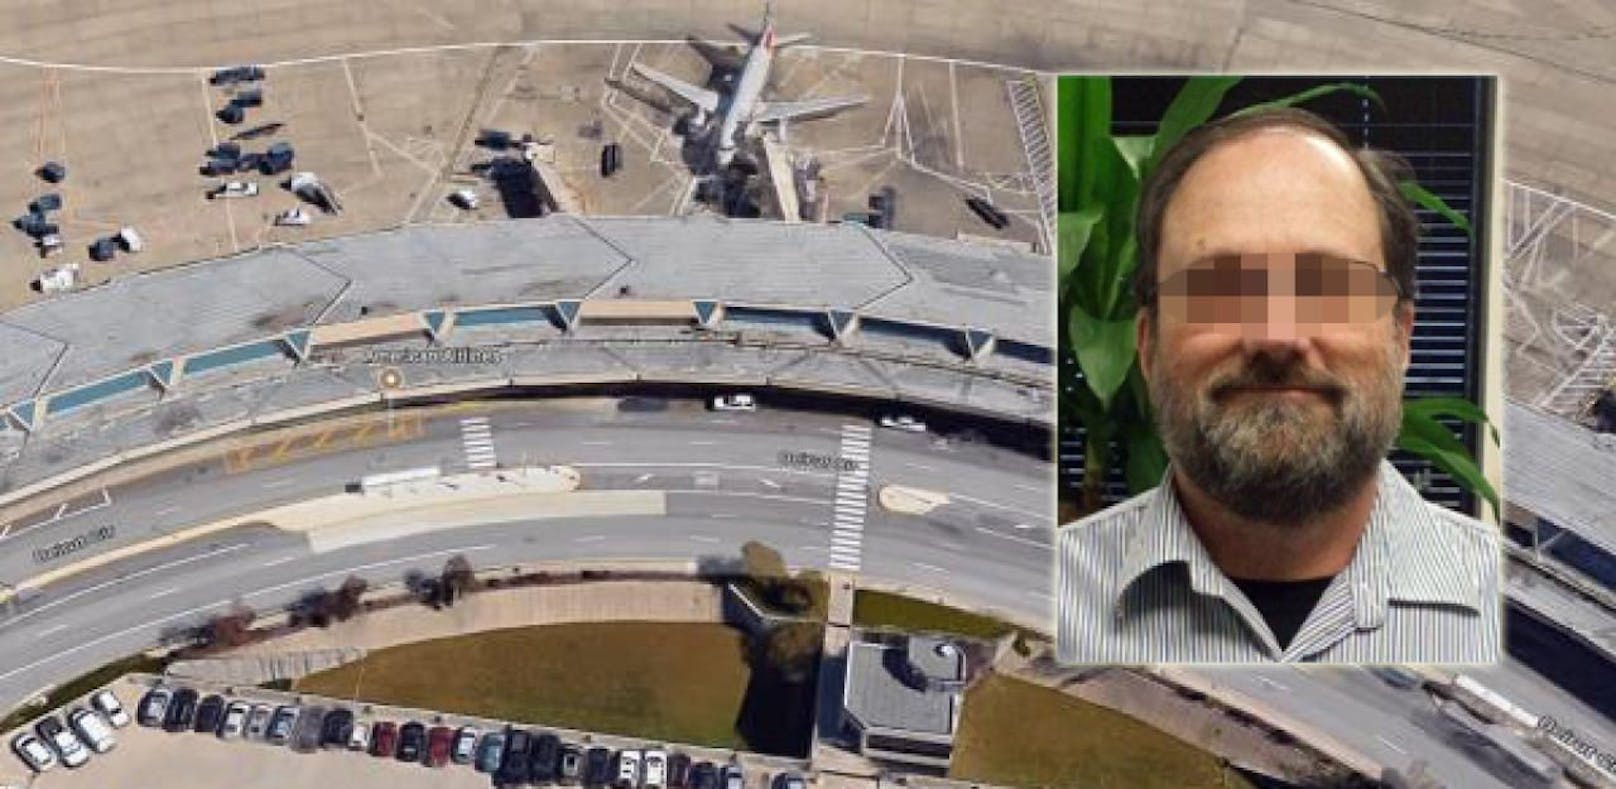 Randy P. saß acht Monate lang tot am Flughafen von Kansas City.